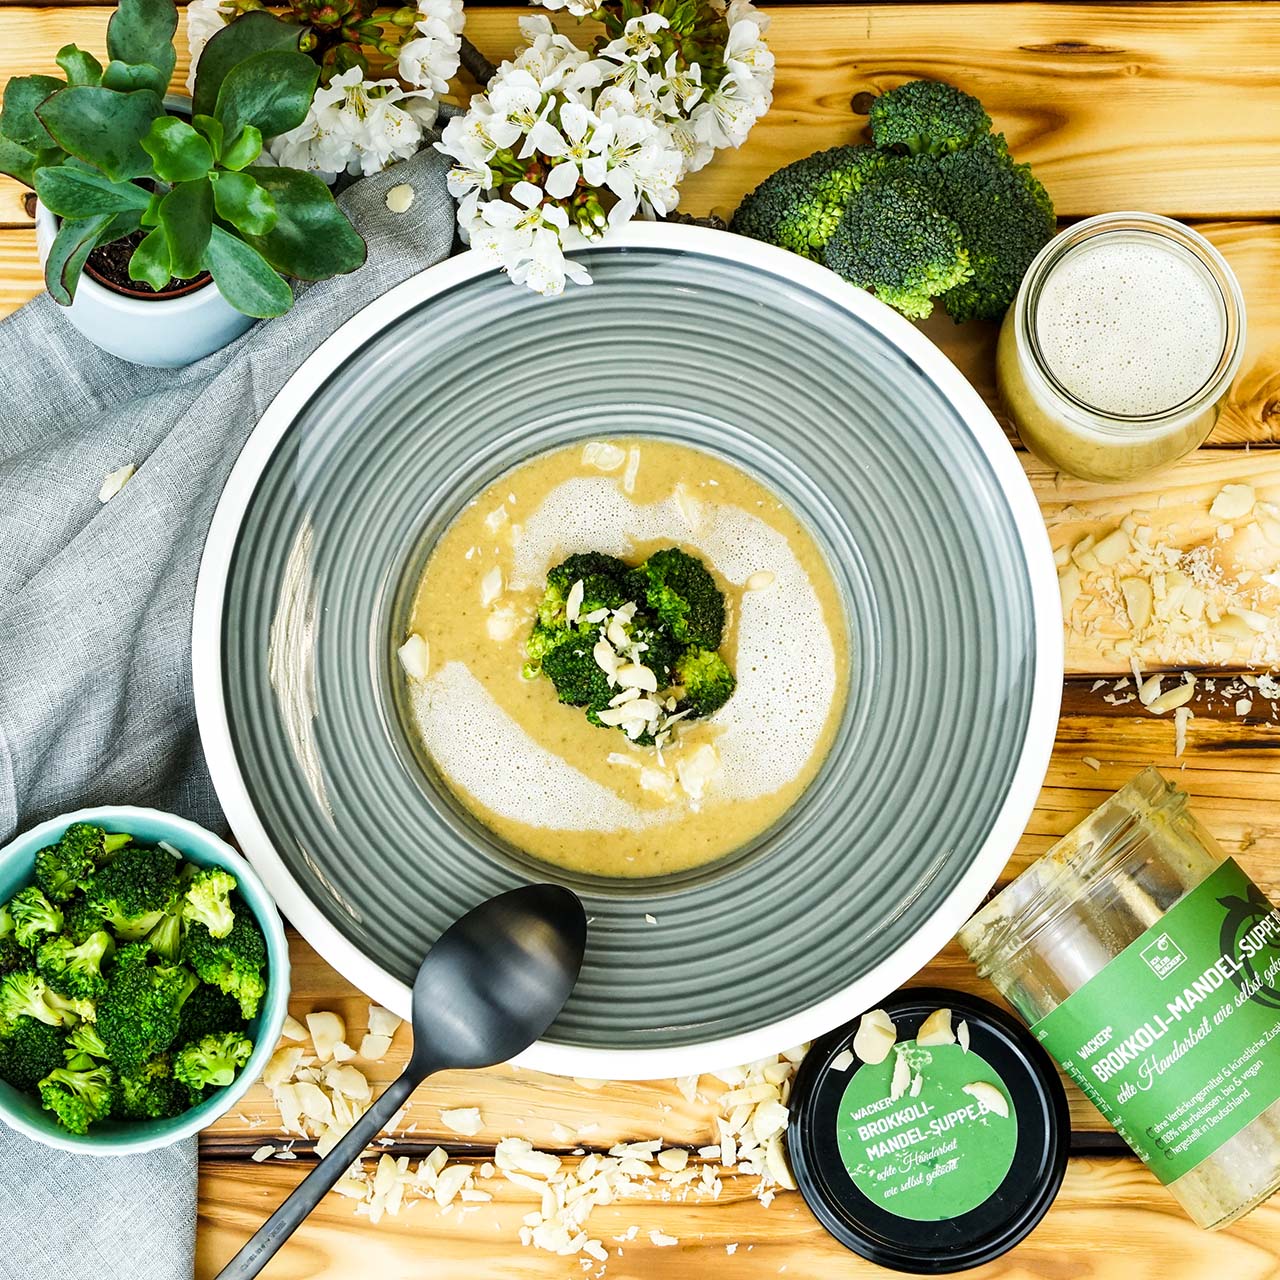 Bio-Suppe mit Brokkoli-Mandel-Geschmack: Das gesunde Fertiggericht